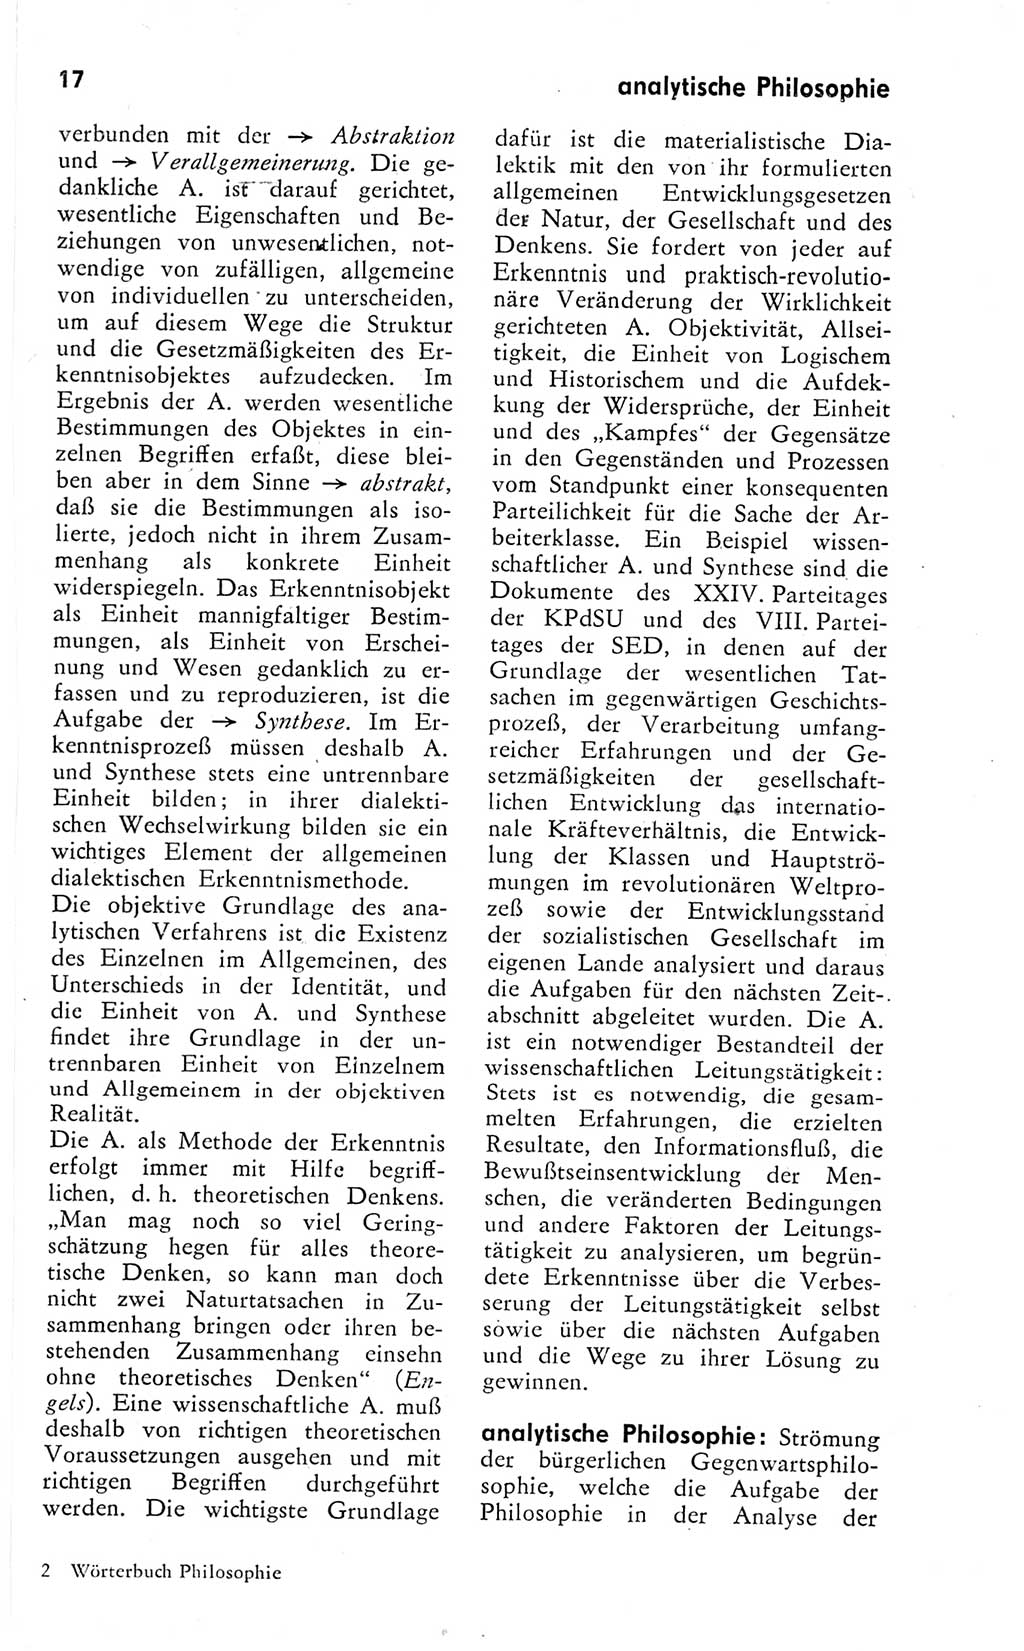 Kleines Wörterbuch der marxistisch-leninistischen Philosophie [Deutsche Demokratische Republik (DDR)] 1974, Seite 17 (Kl. Wb. ML Phil. DDR 1974, S. 17)